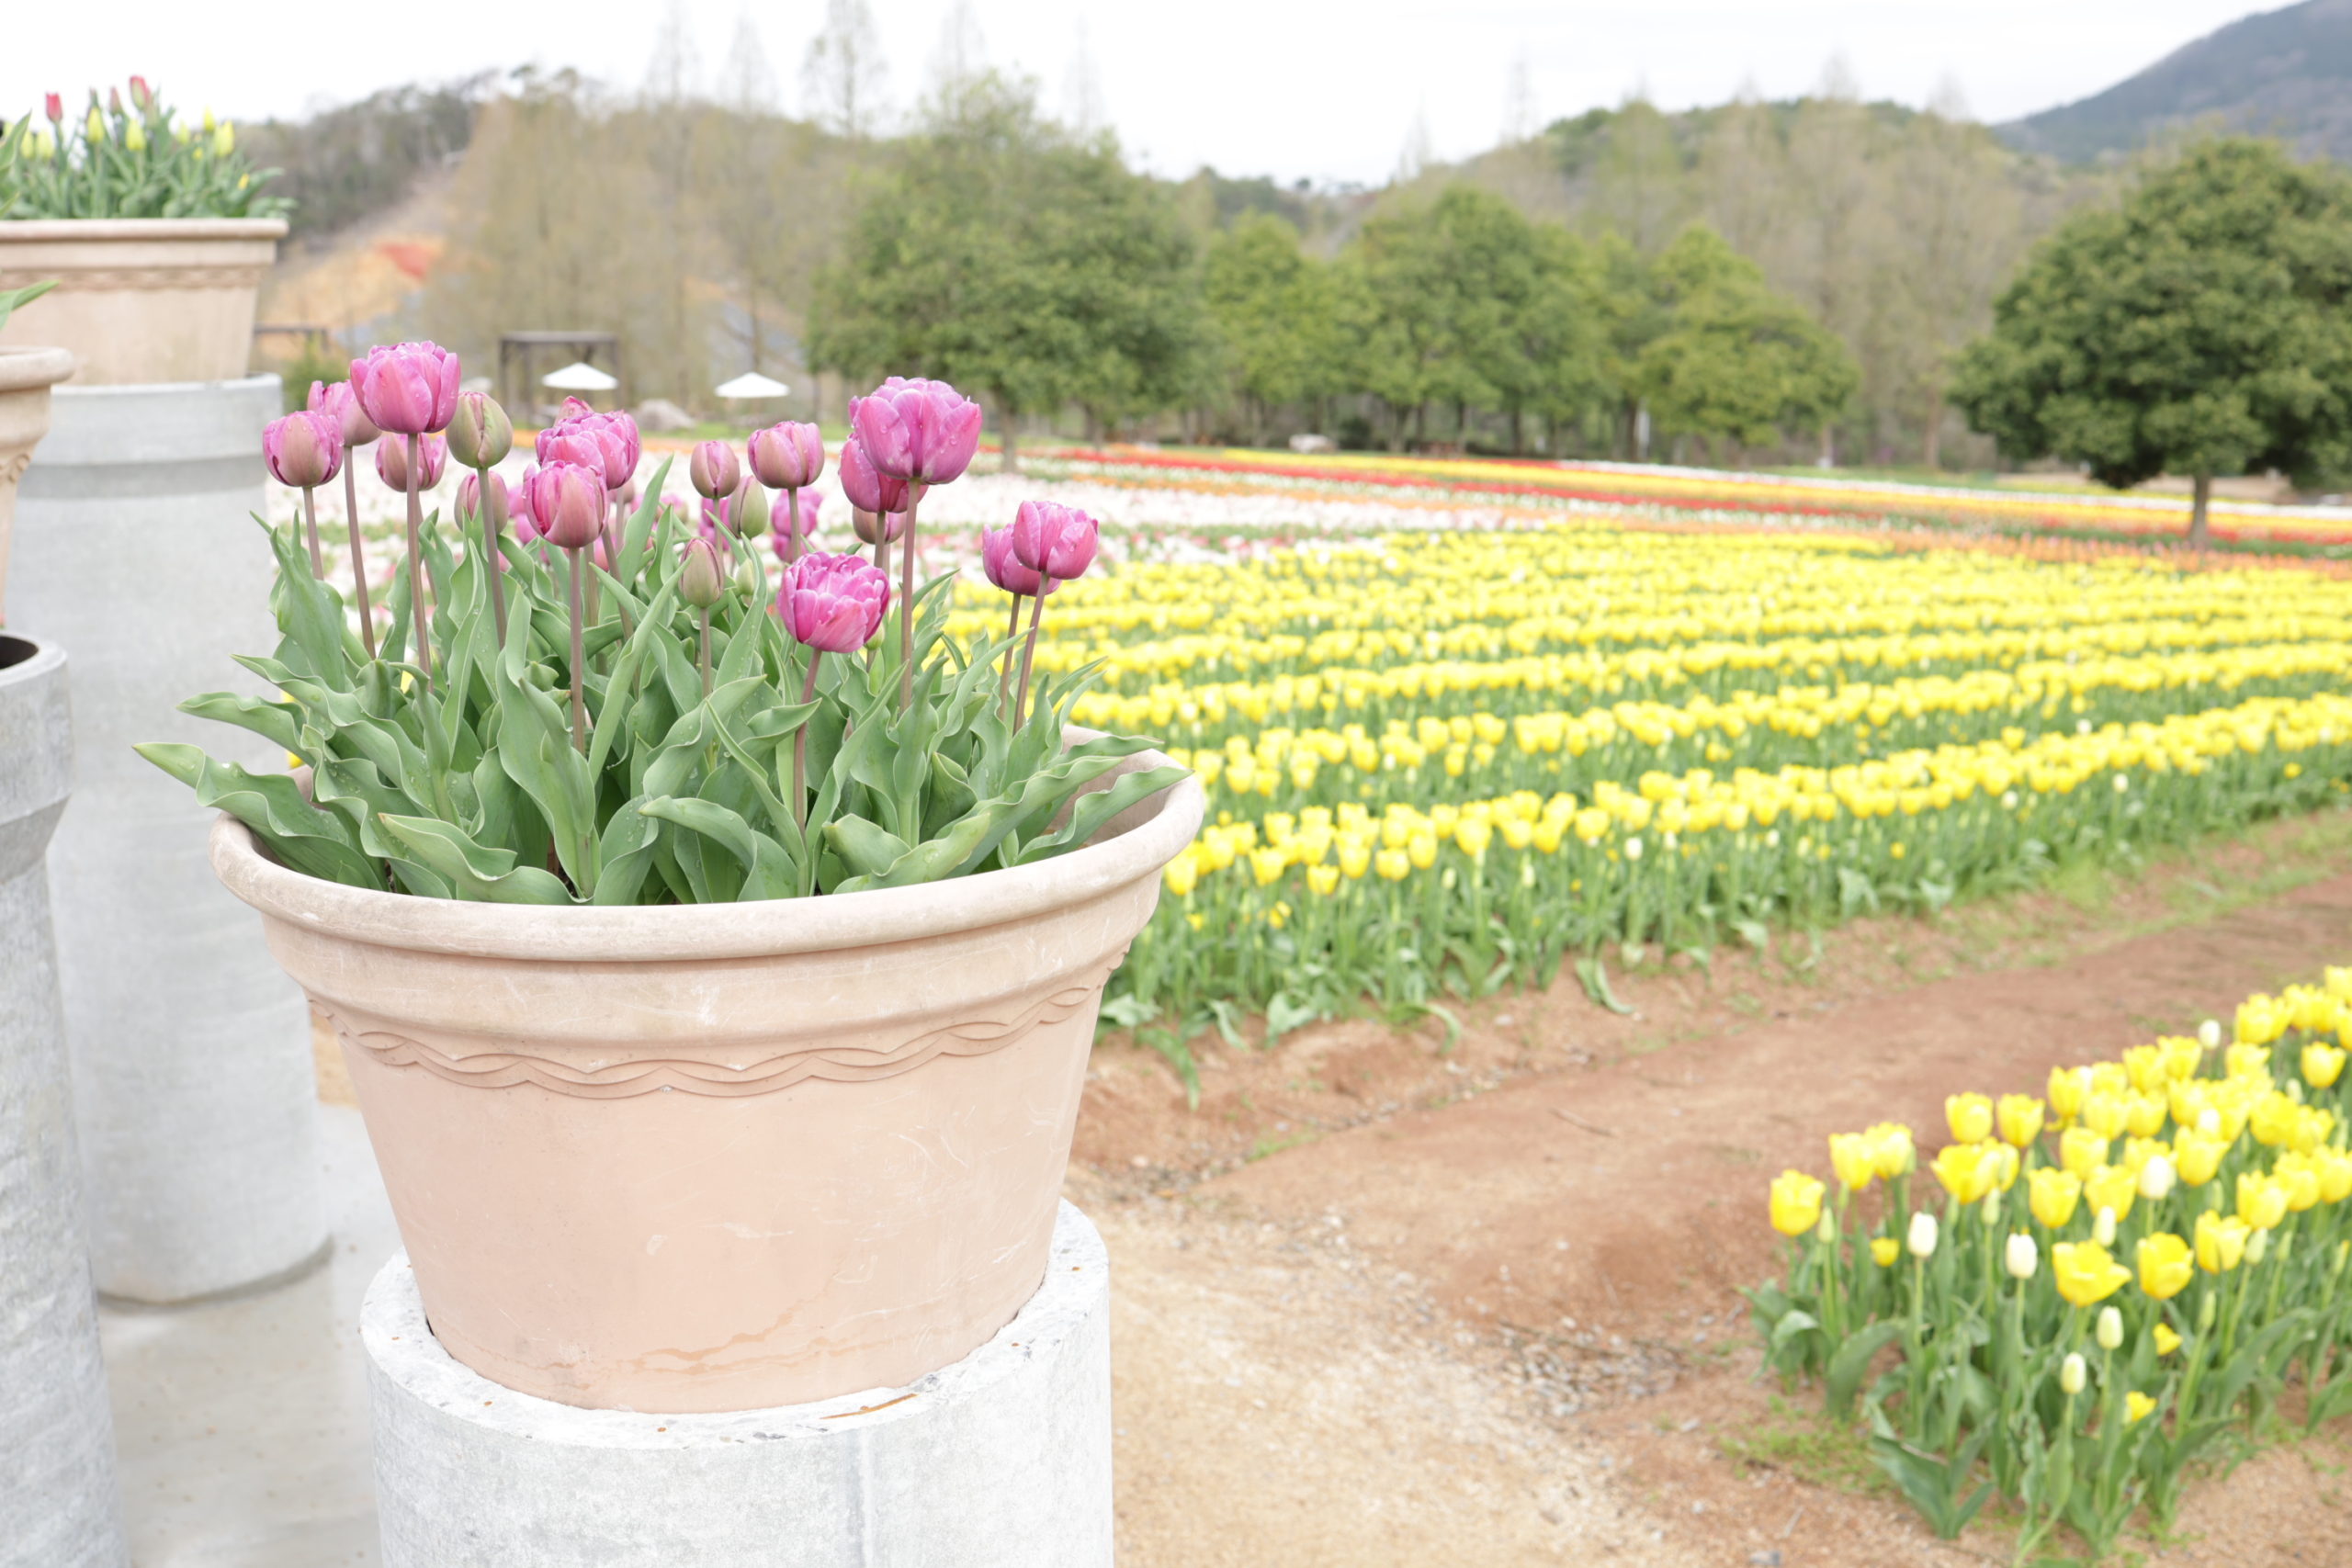 【Park open】Tulip【60% flowering】